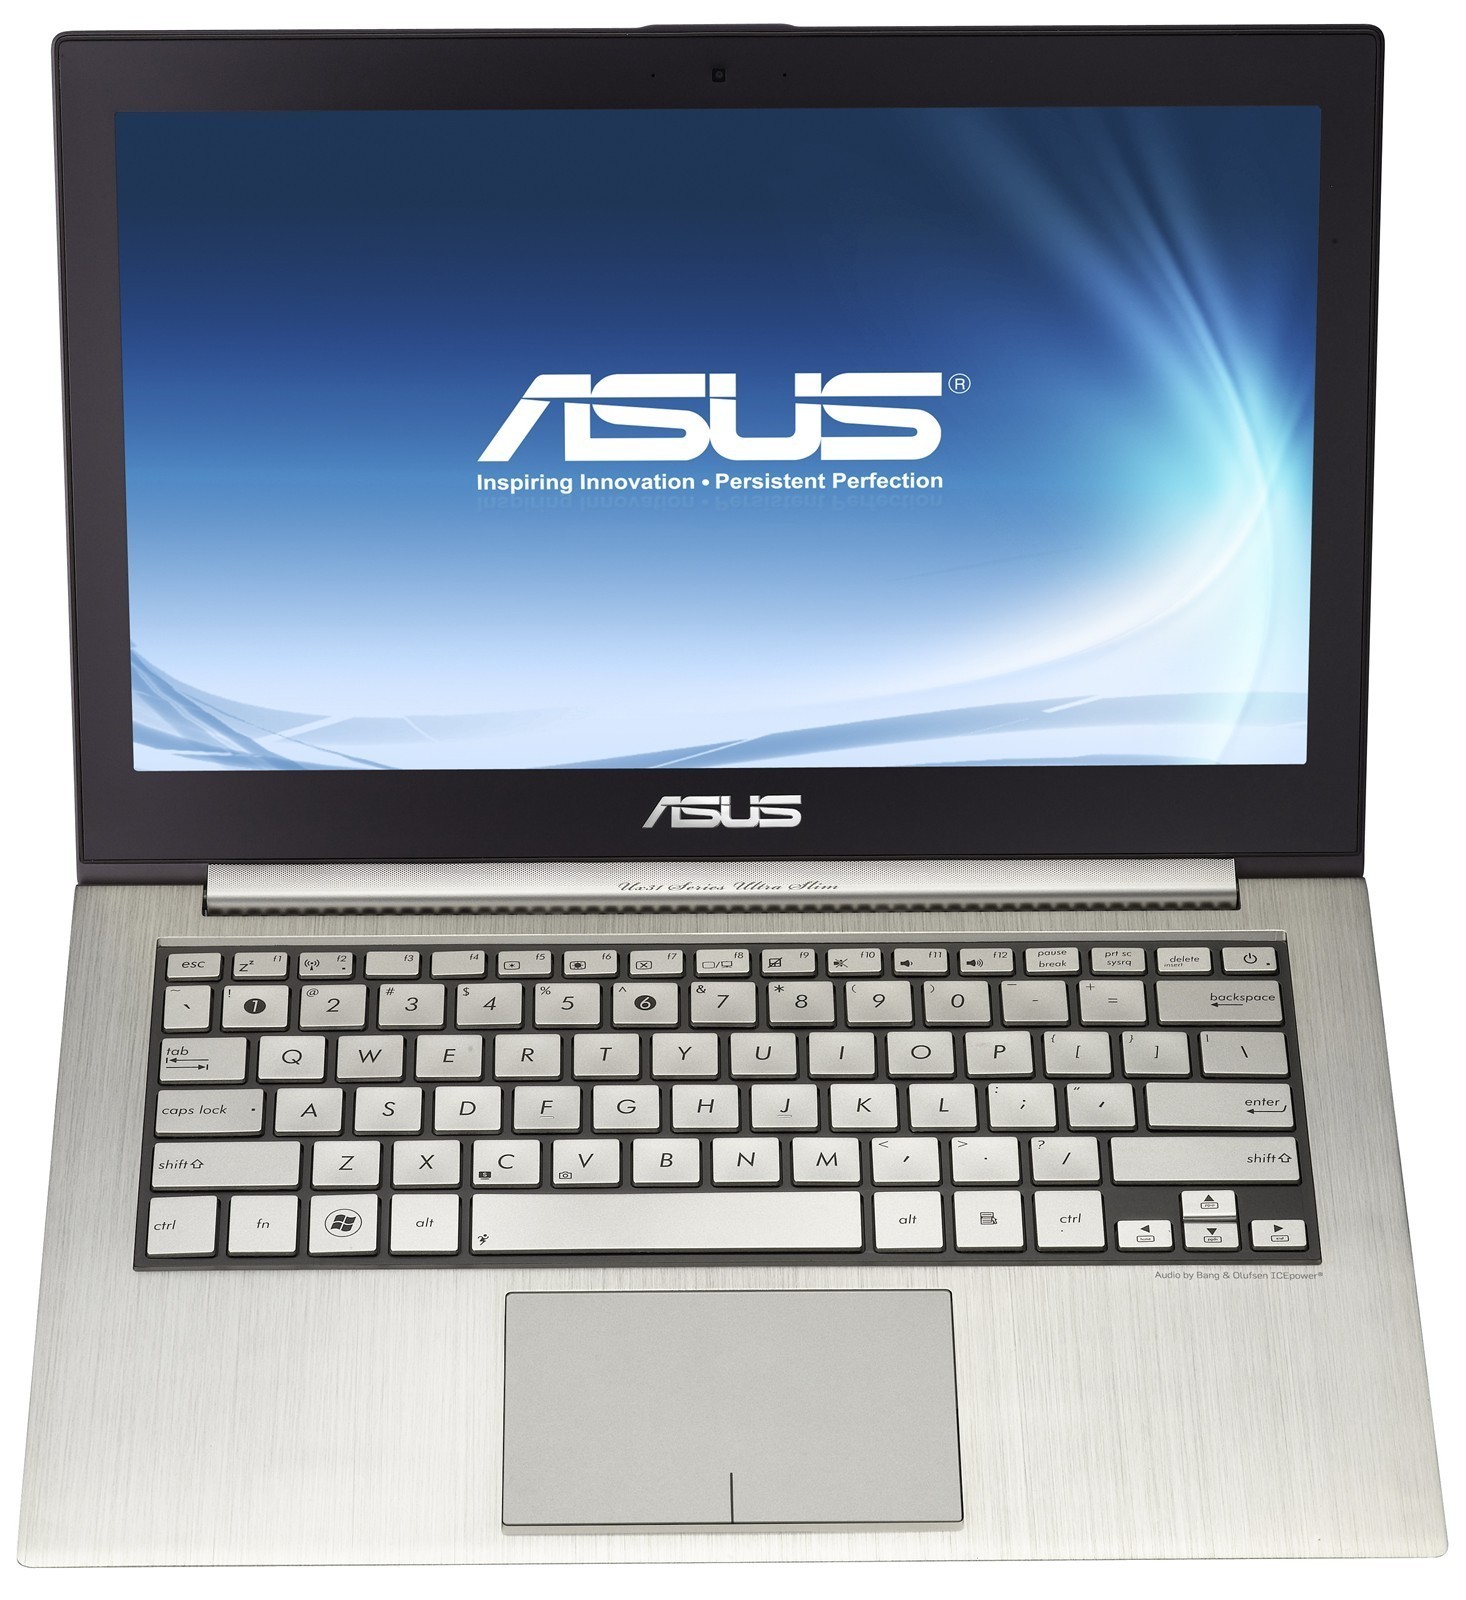 Netbook Laptop Specs Asus Zenbook Ux31e Xh72 Review